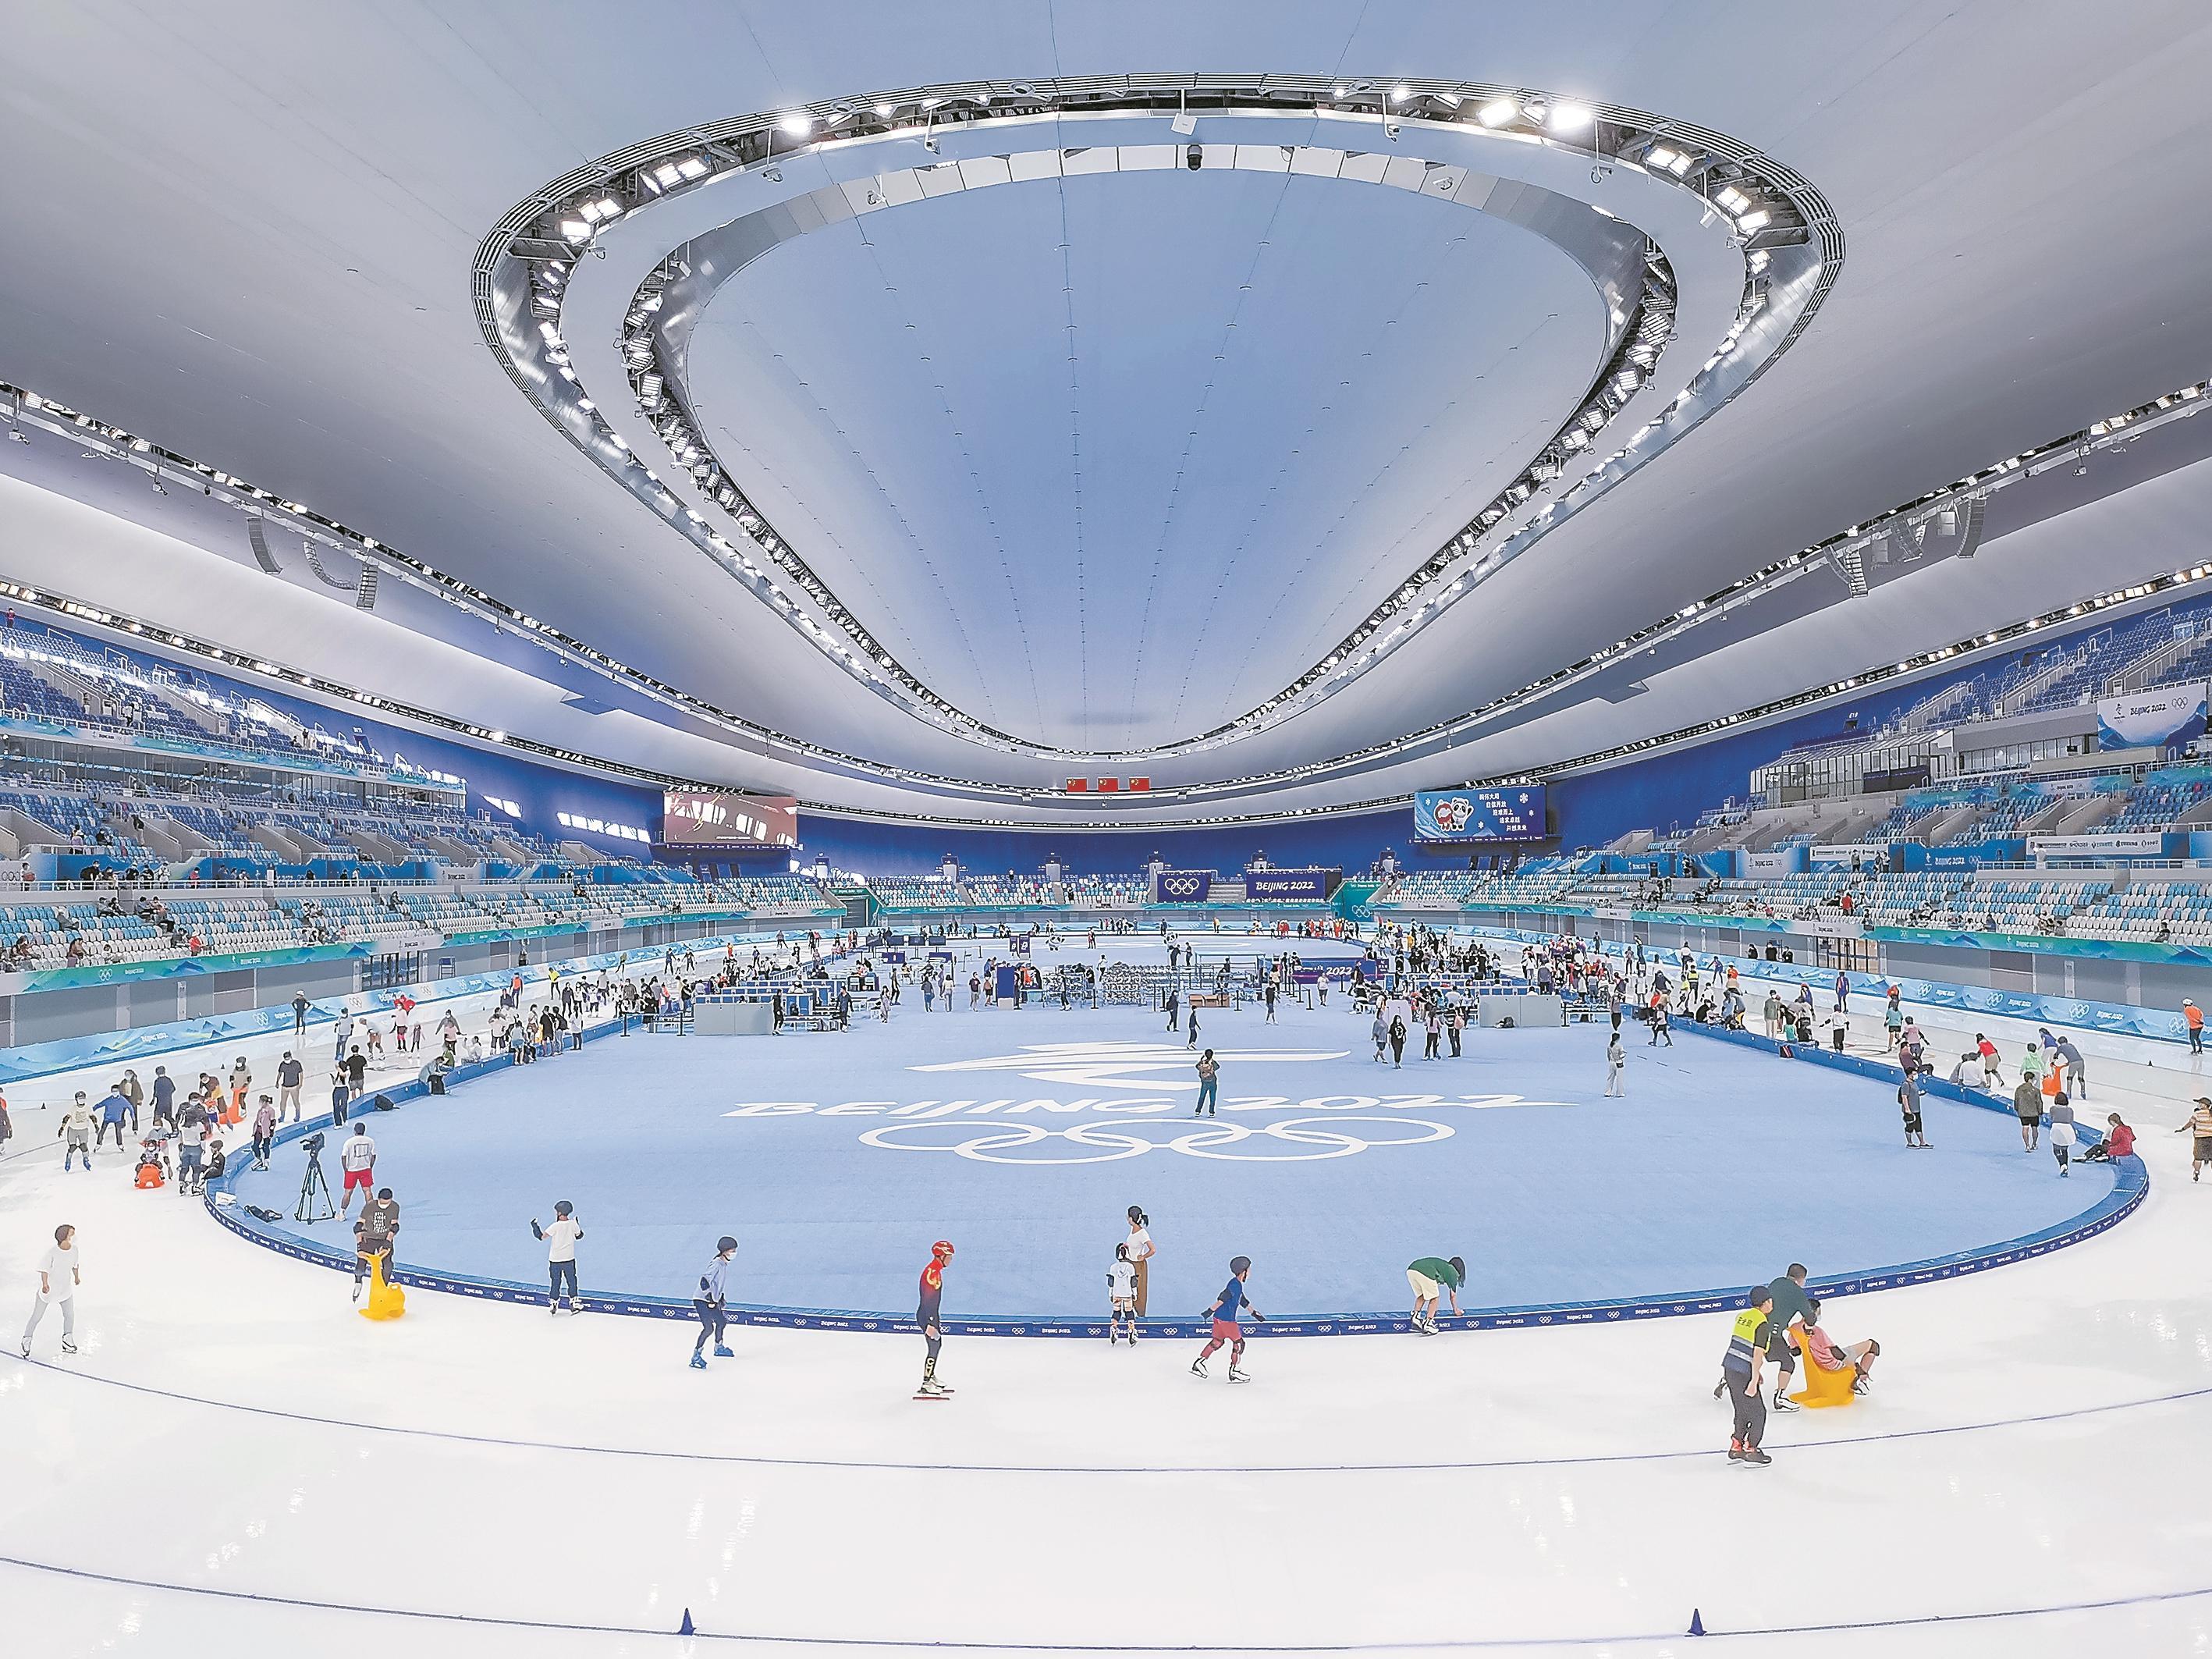 北京冬奥会速滑馆图片